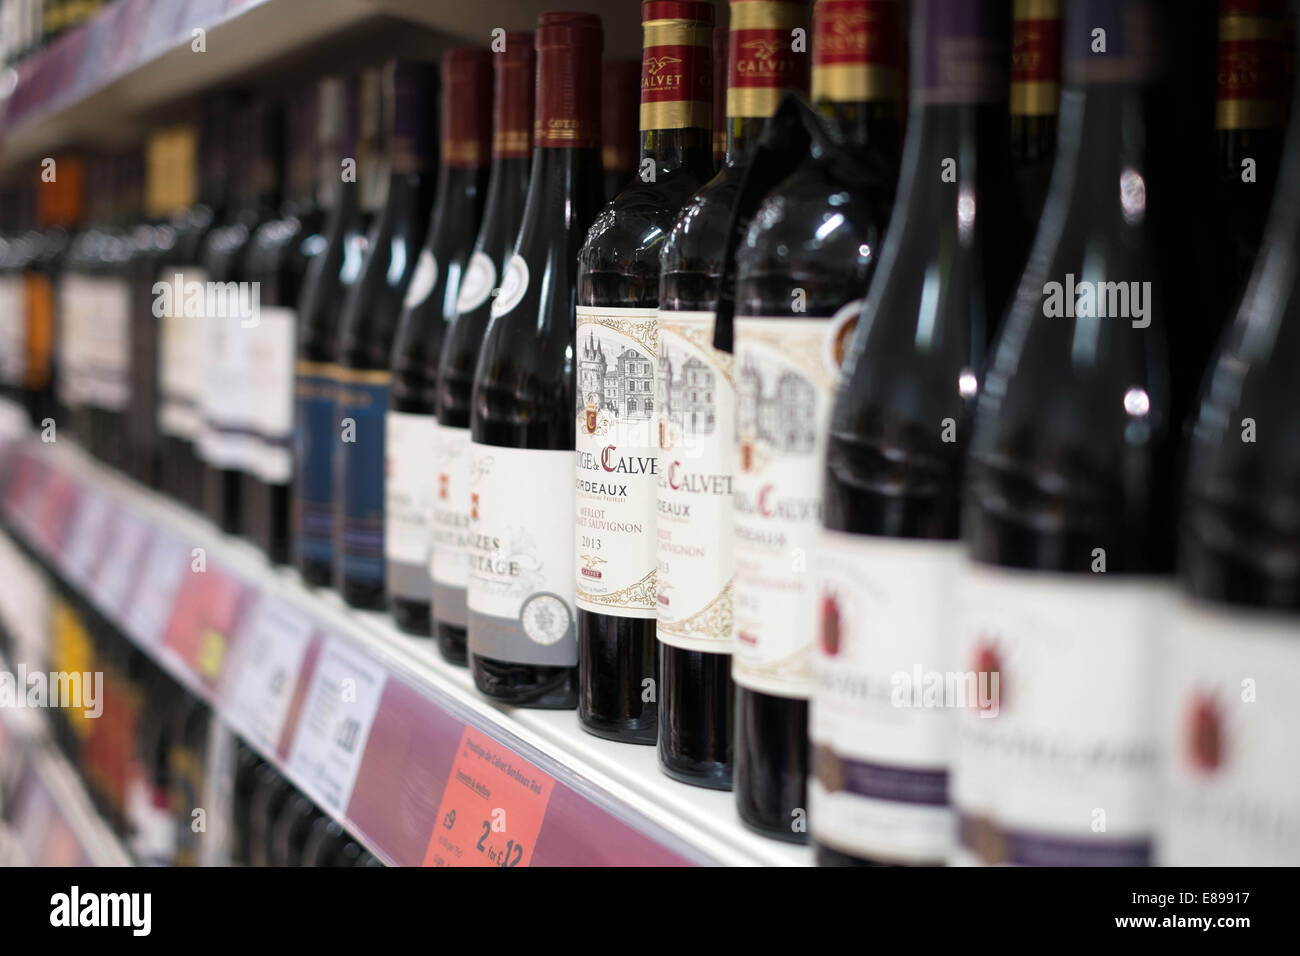 Eine Auswahl an roten Wein in Flaschen auf einem Regal in einem Zweig der Sainsbury Supermarkt Preise & Angebote anzeigen Stockfoto